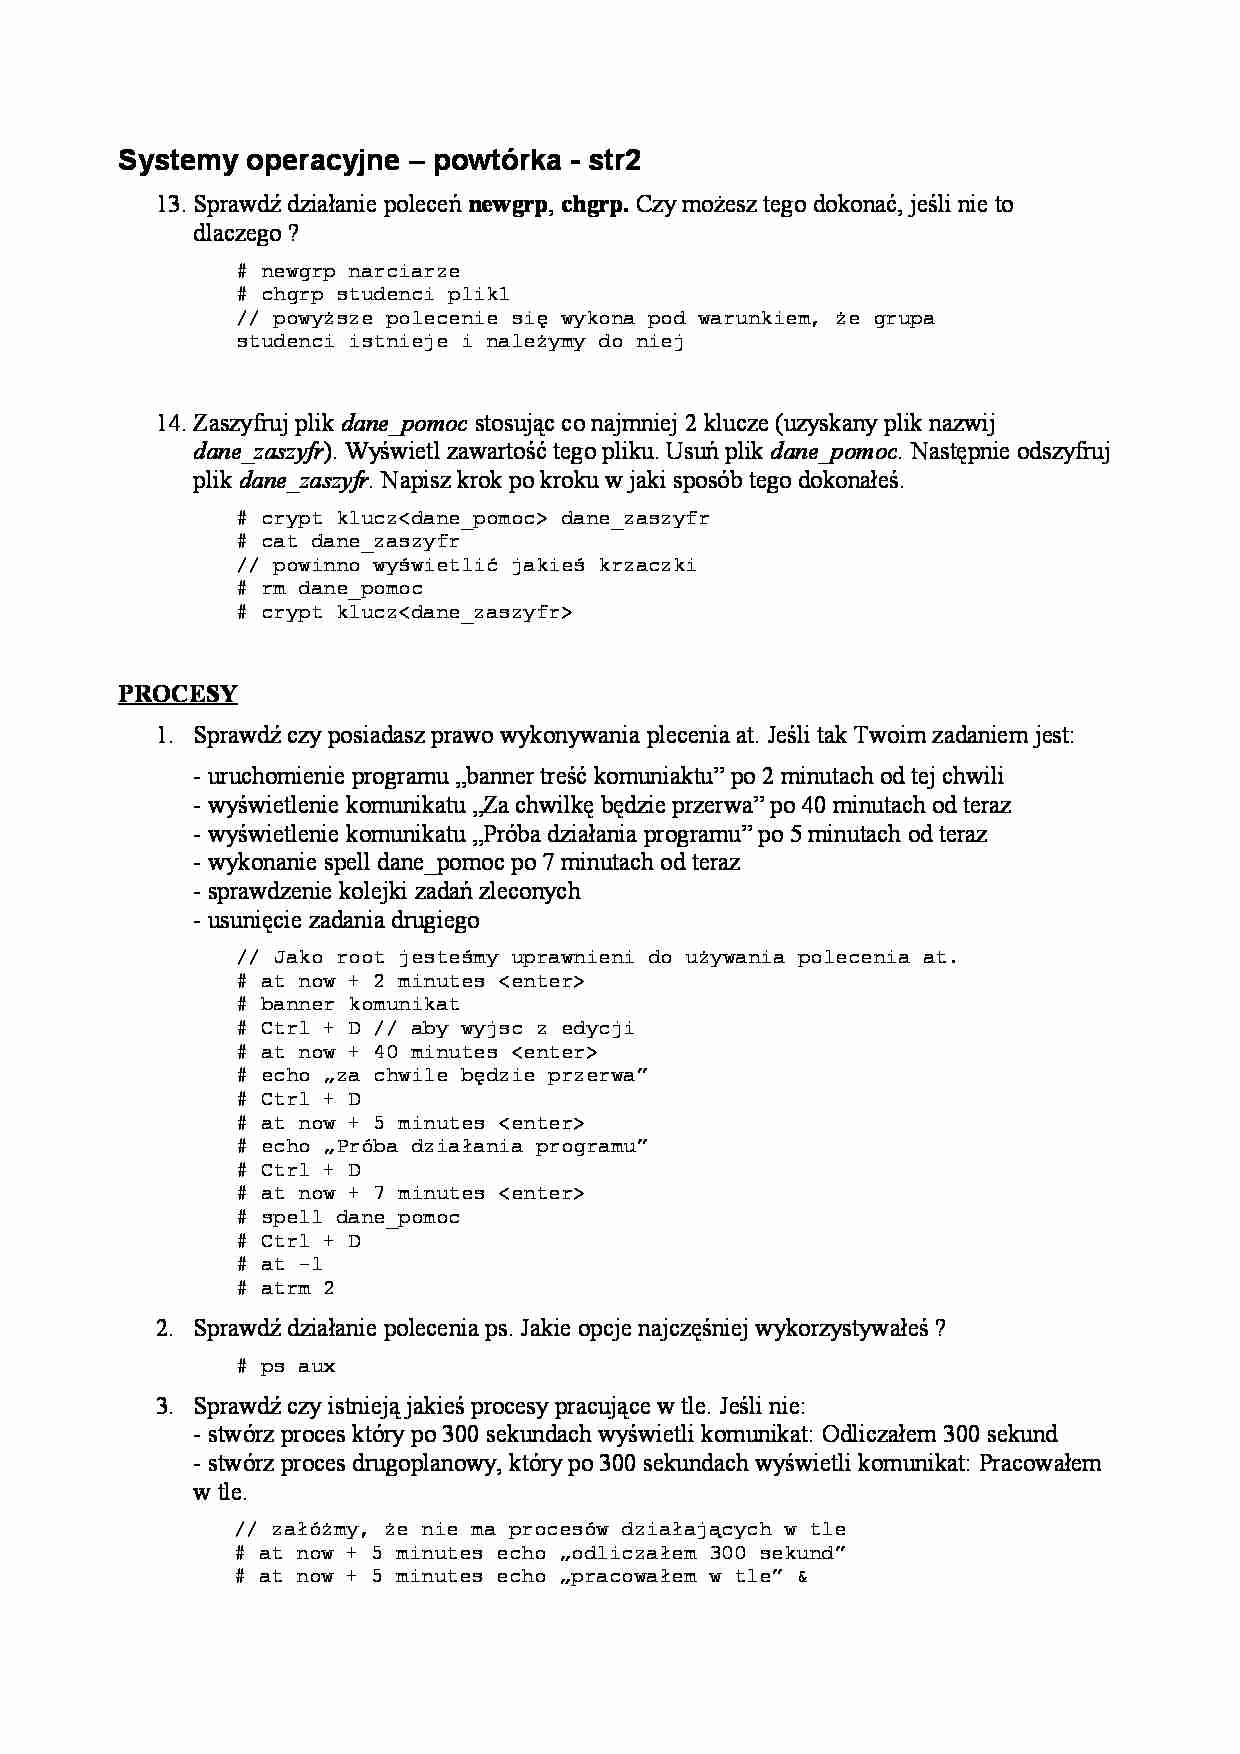 Systemy operacyjne - powtórka cześć 2 - strona 1